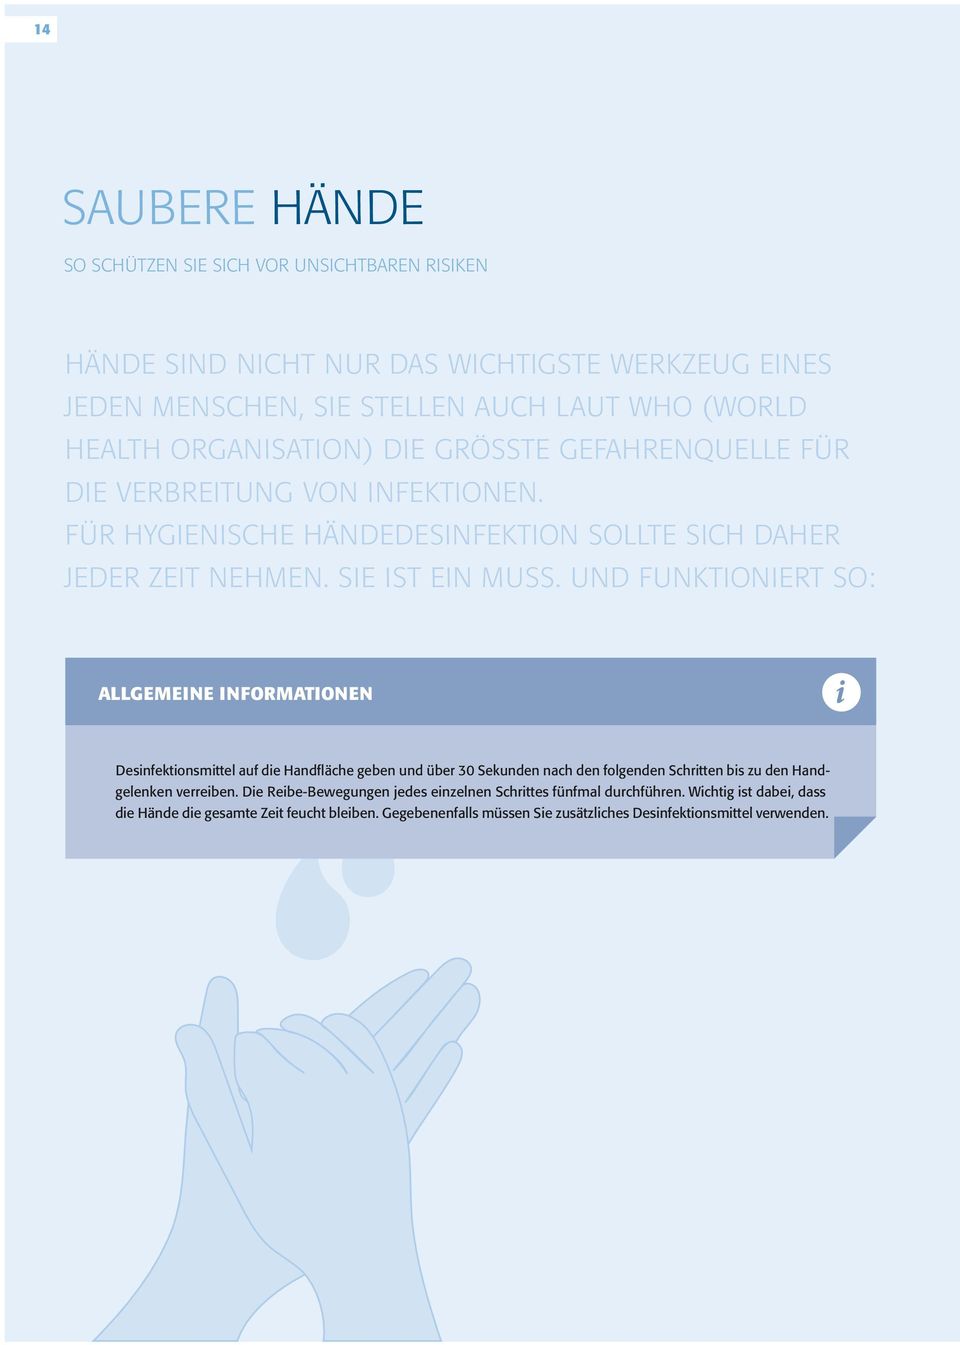 Und funktioniert so: Allgemeine informationen i Desinfektionsmittel auf die Handfläche geben und über 30 Sekunden nach den folgenden Schritten bis zu den Handgelenken verreiben.